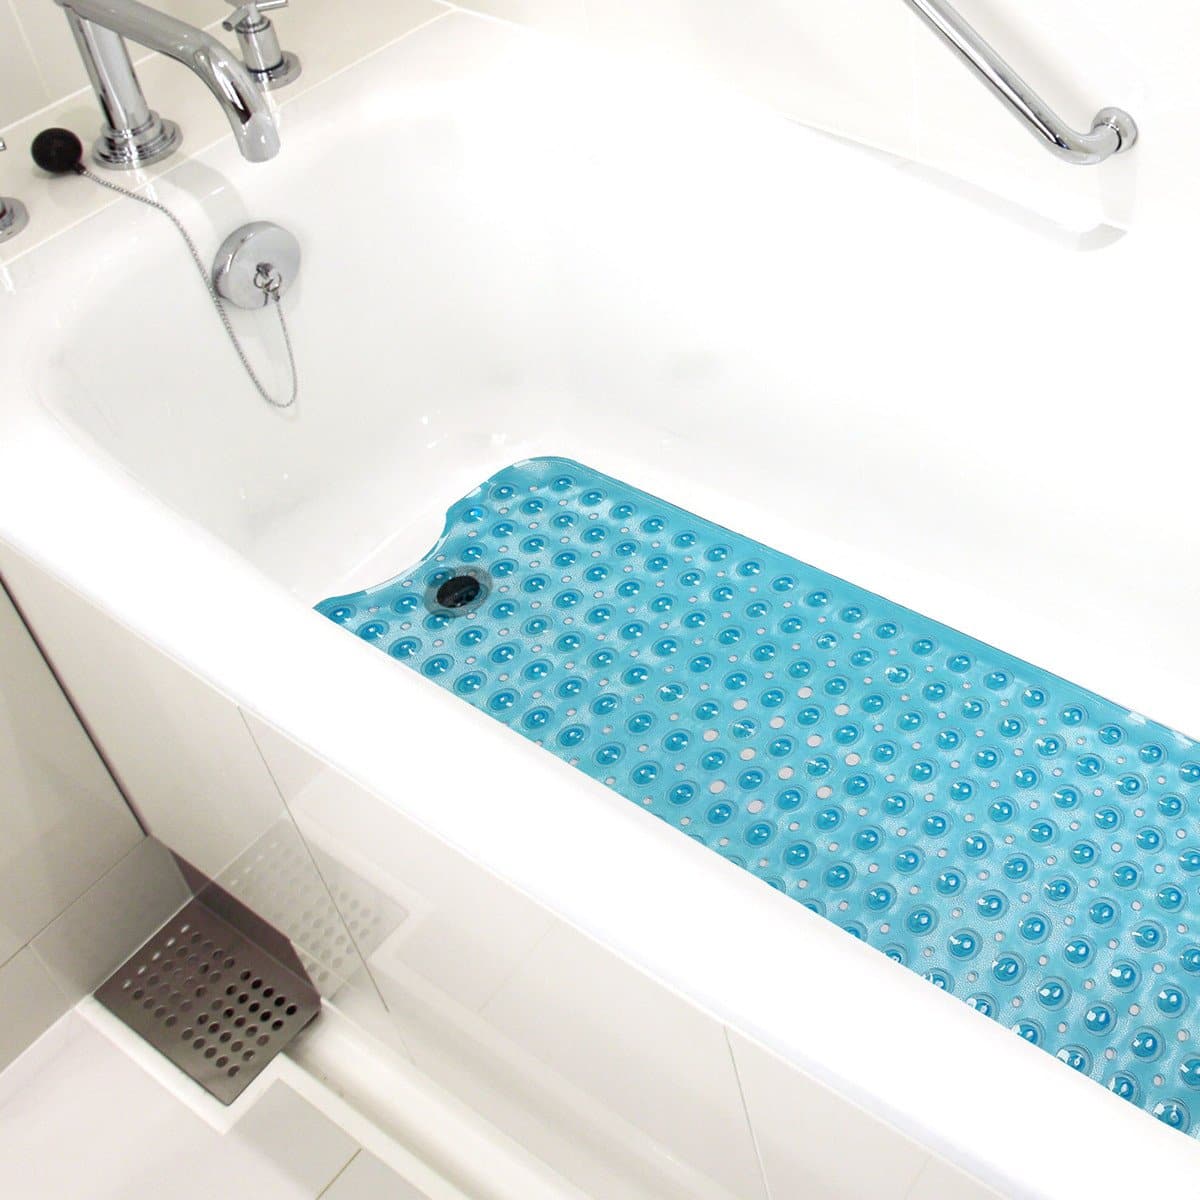 HealthSmart No-Skid Bath & Shower Mats - 16" x 40" - Senior.com Shower Mats